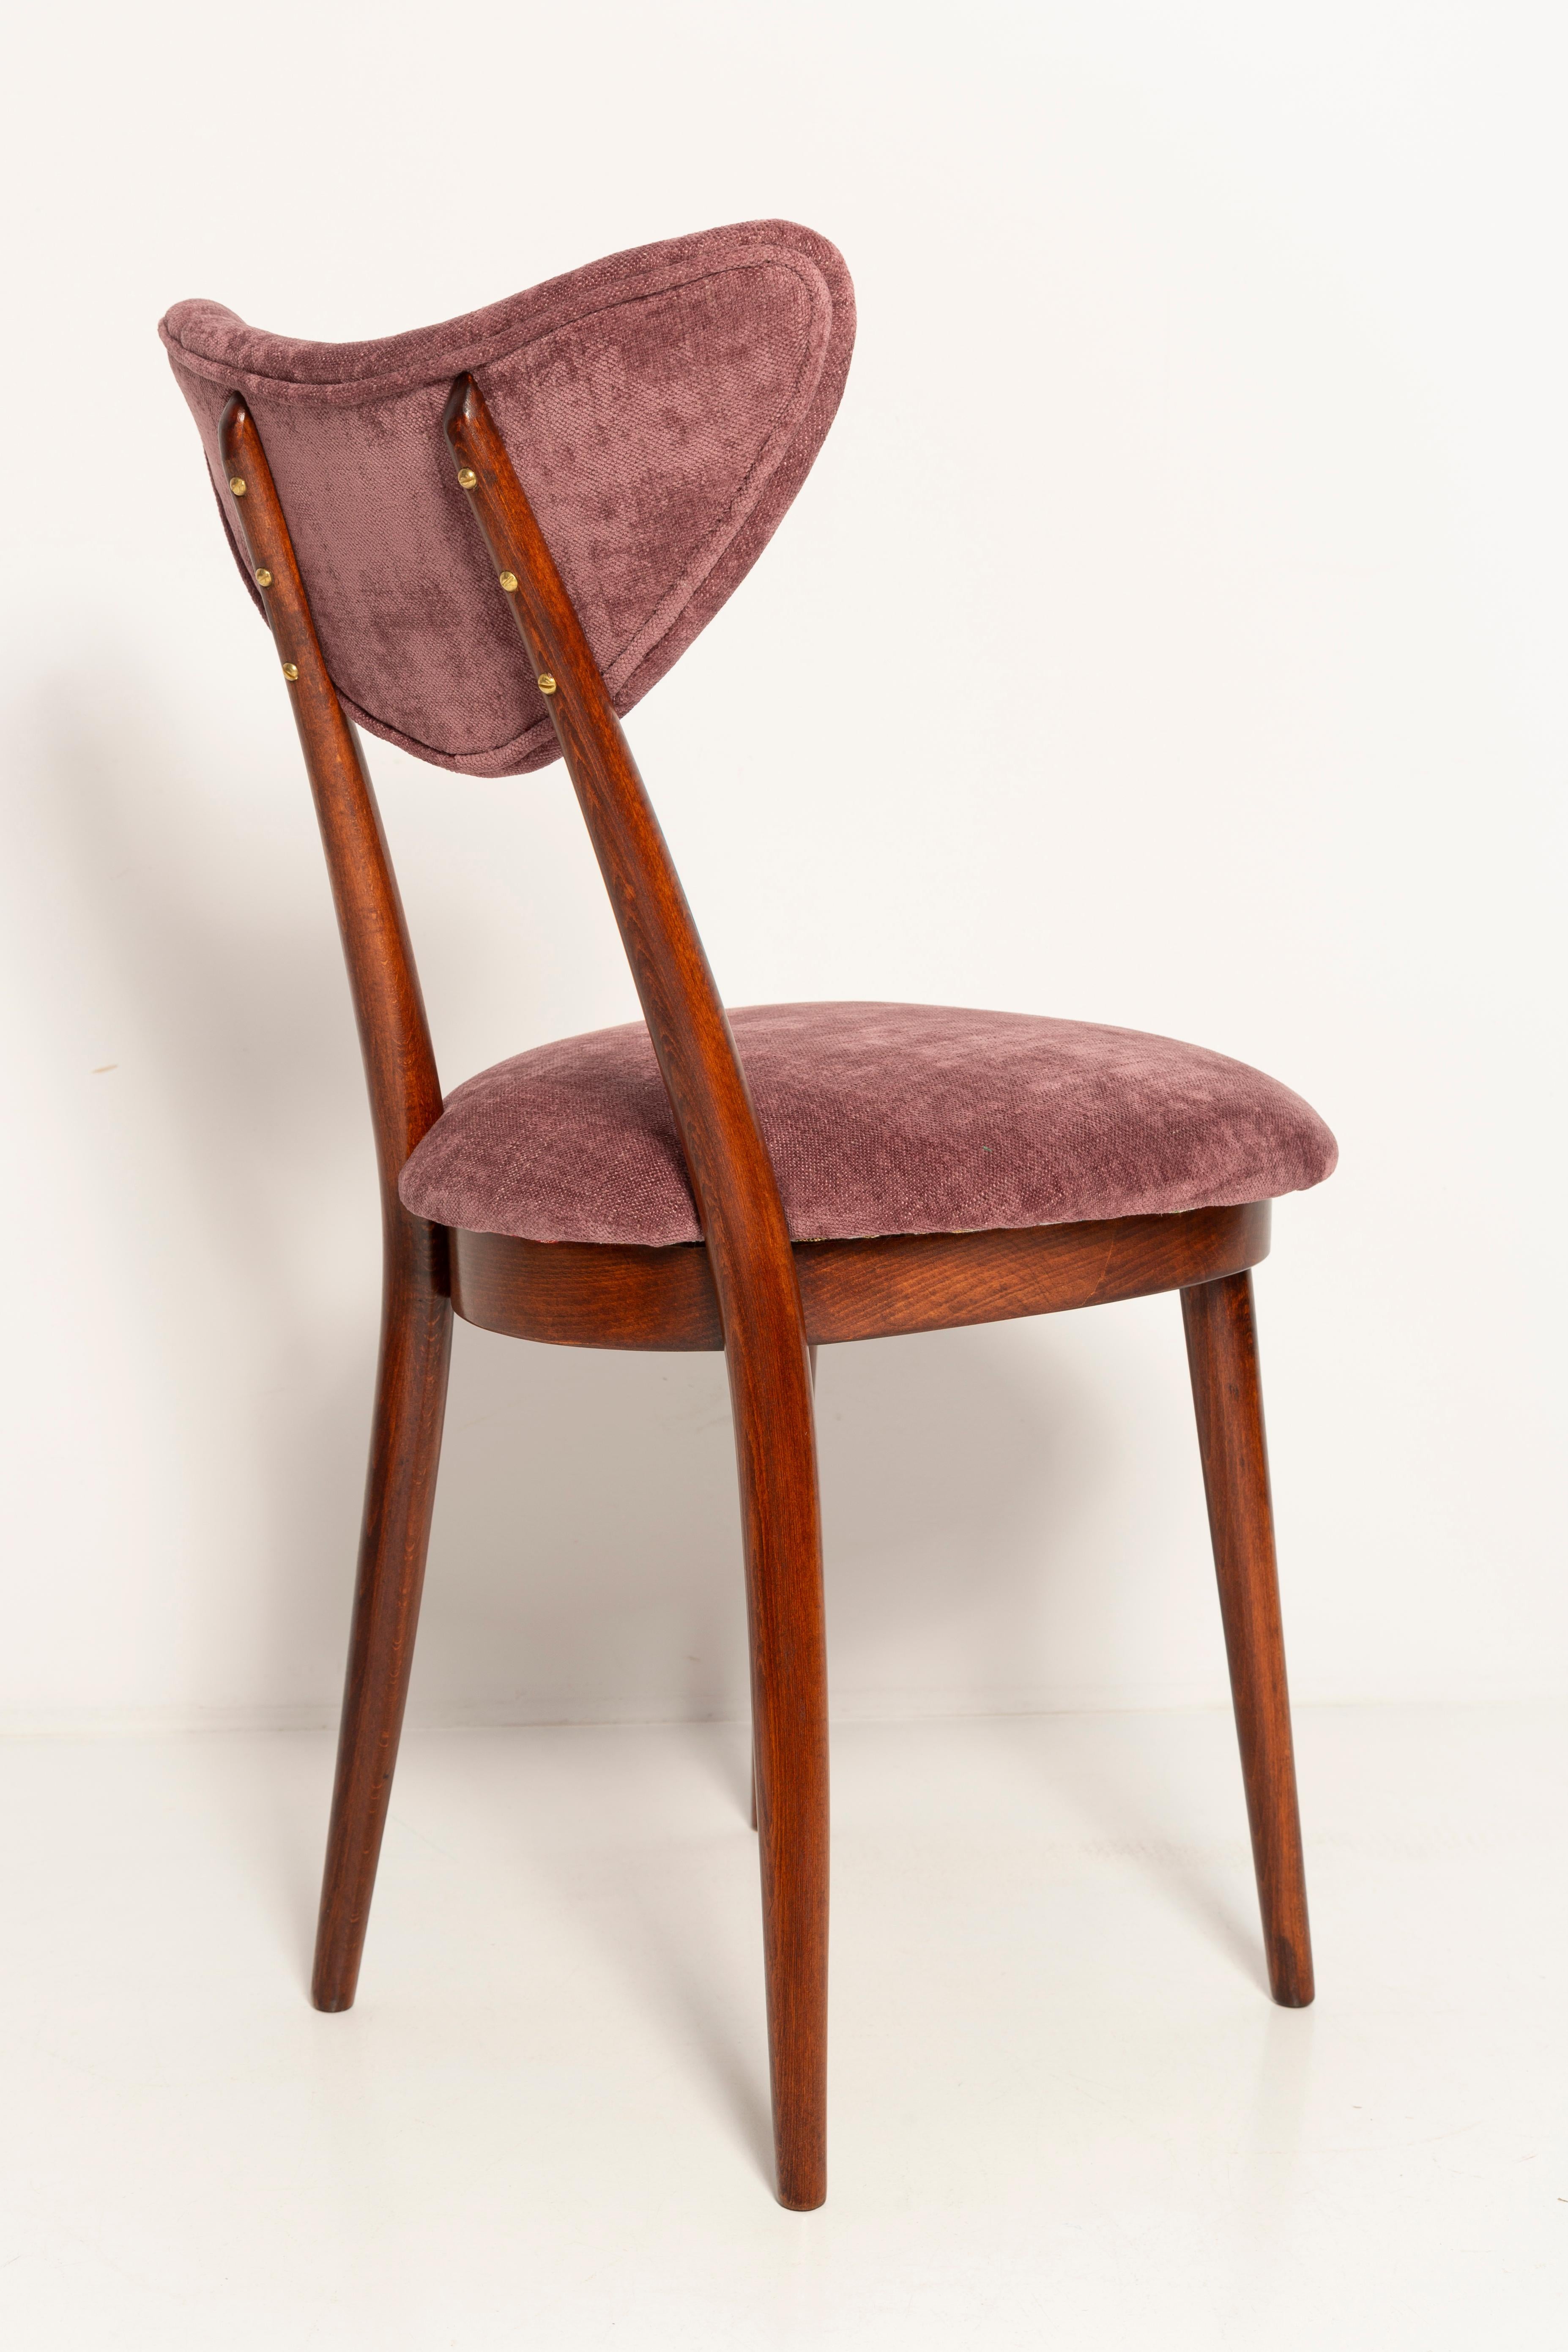 Midcentury Burgundy Pink Violet Velvet Heart Chair, Europe, 1960s For Sale 2